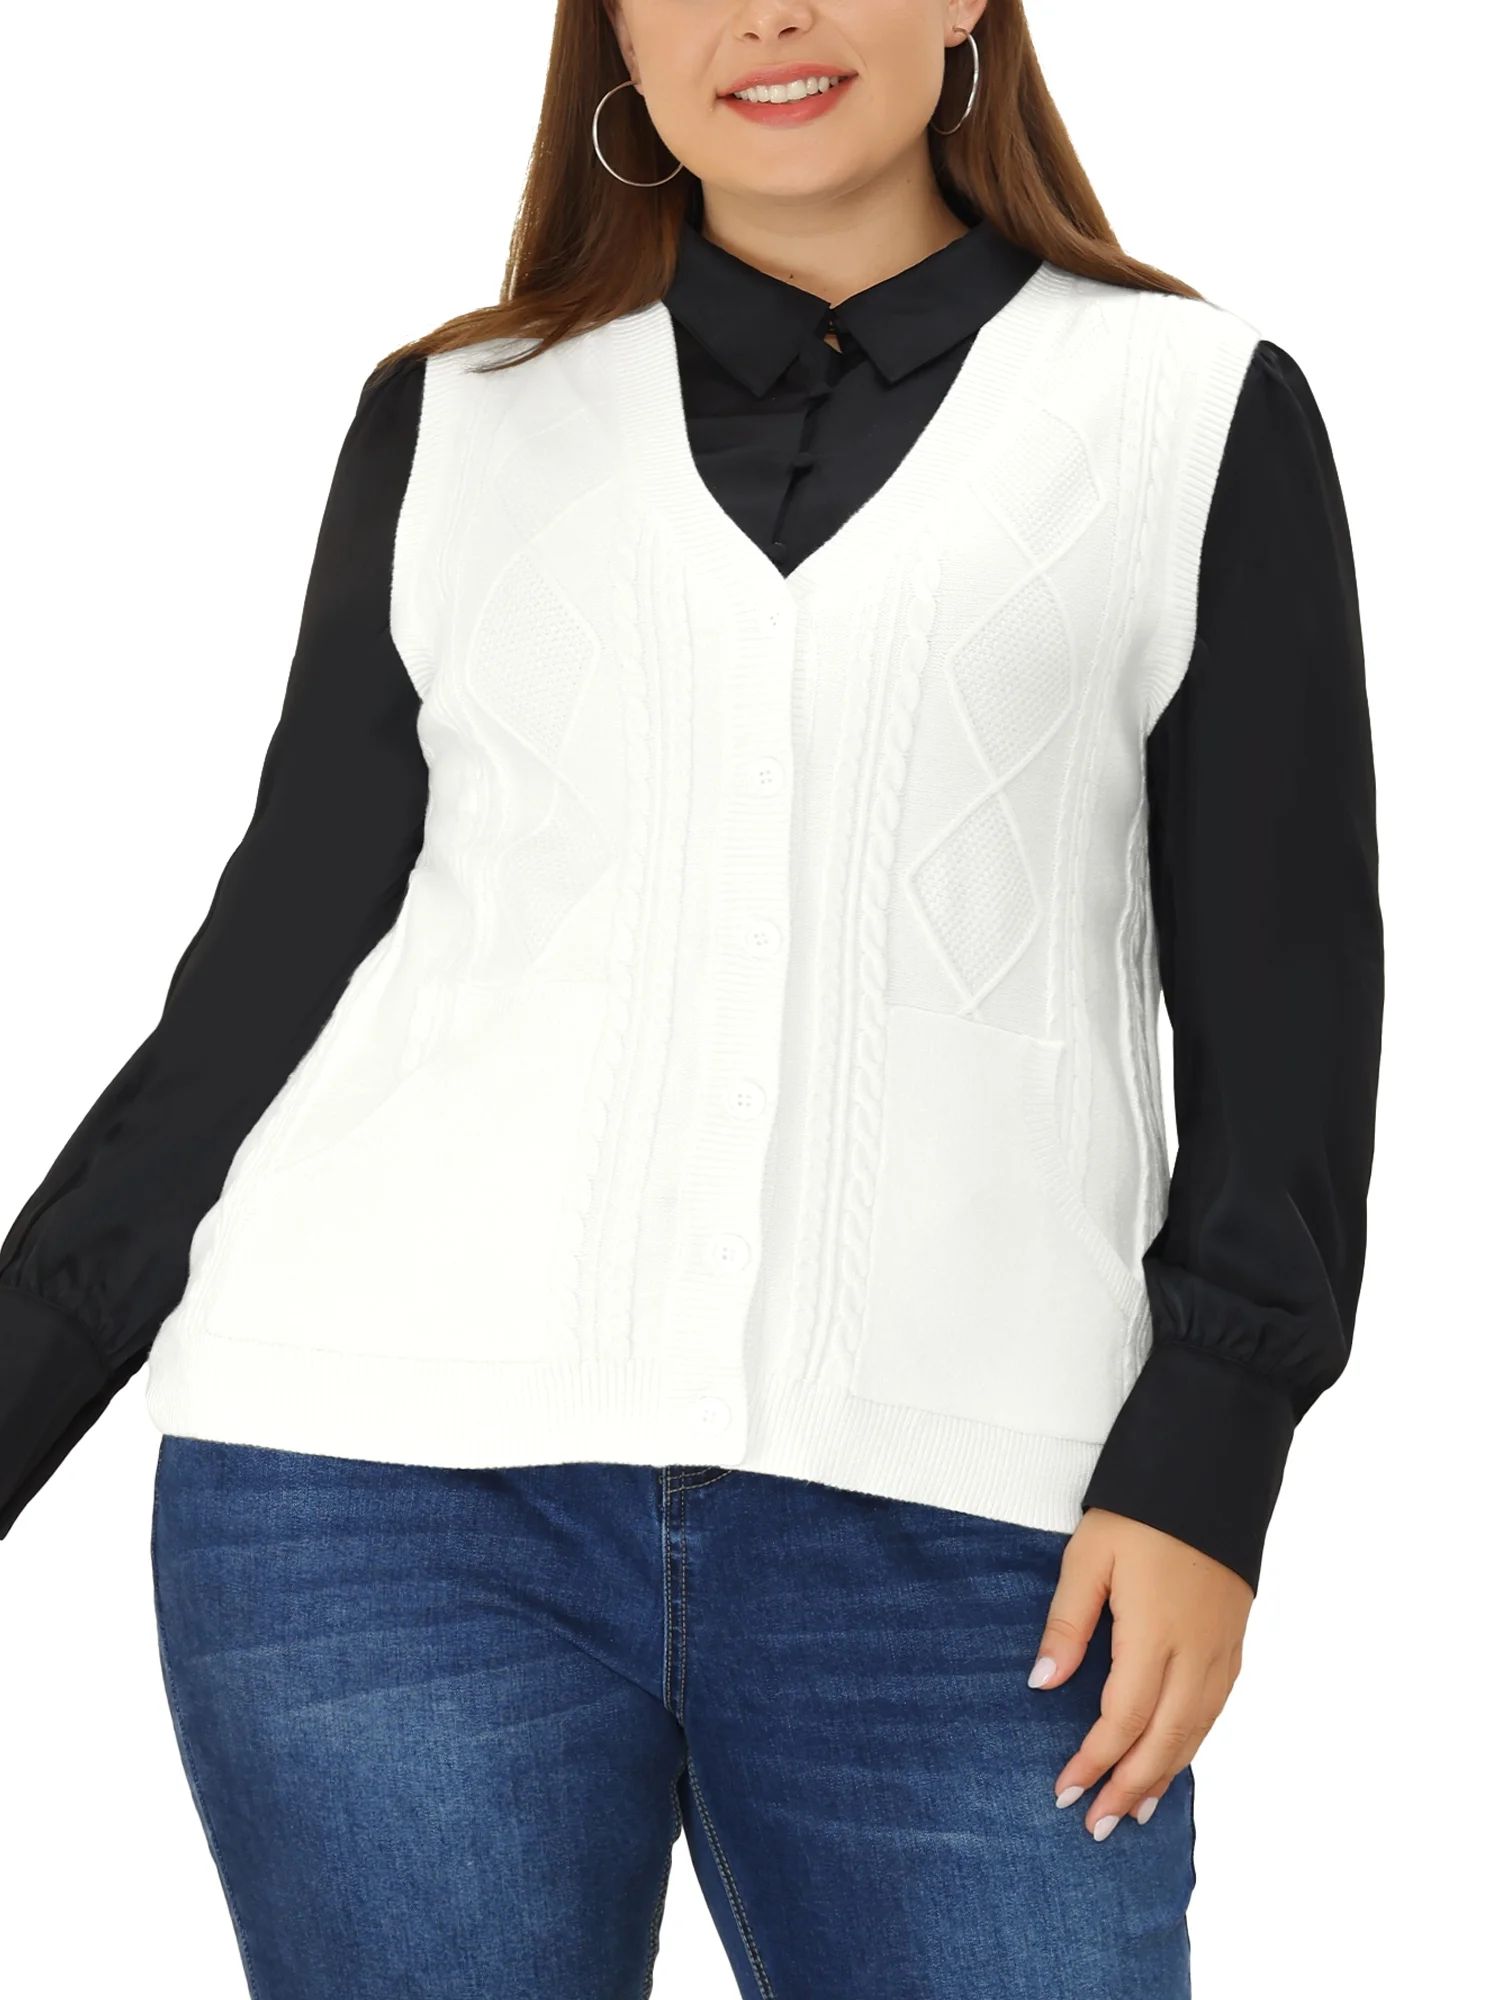 Unique Bargains Women's Plus Size Cable Knit Sweater Pocket Cardigan Vests - Walmart.com | Walmart (US)